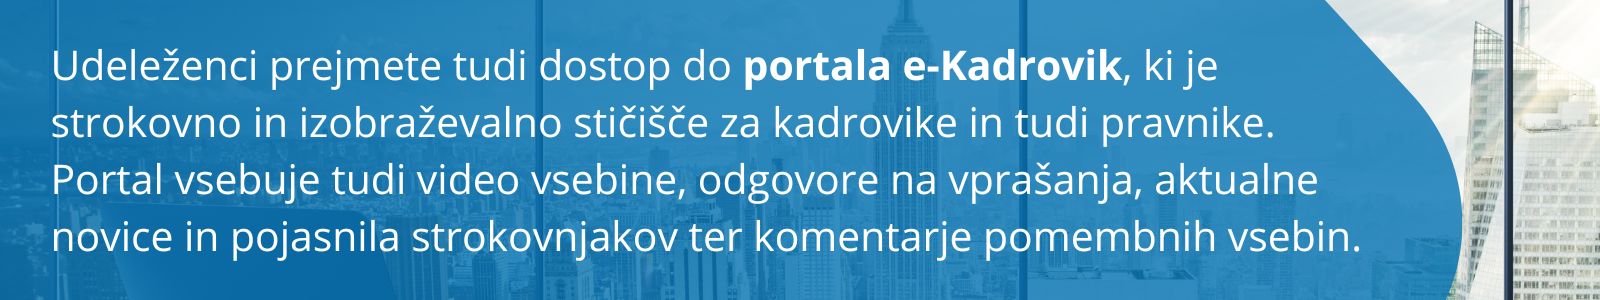 Udeleženci portala e-Kadrovik